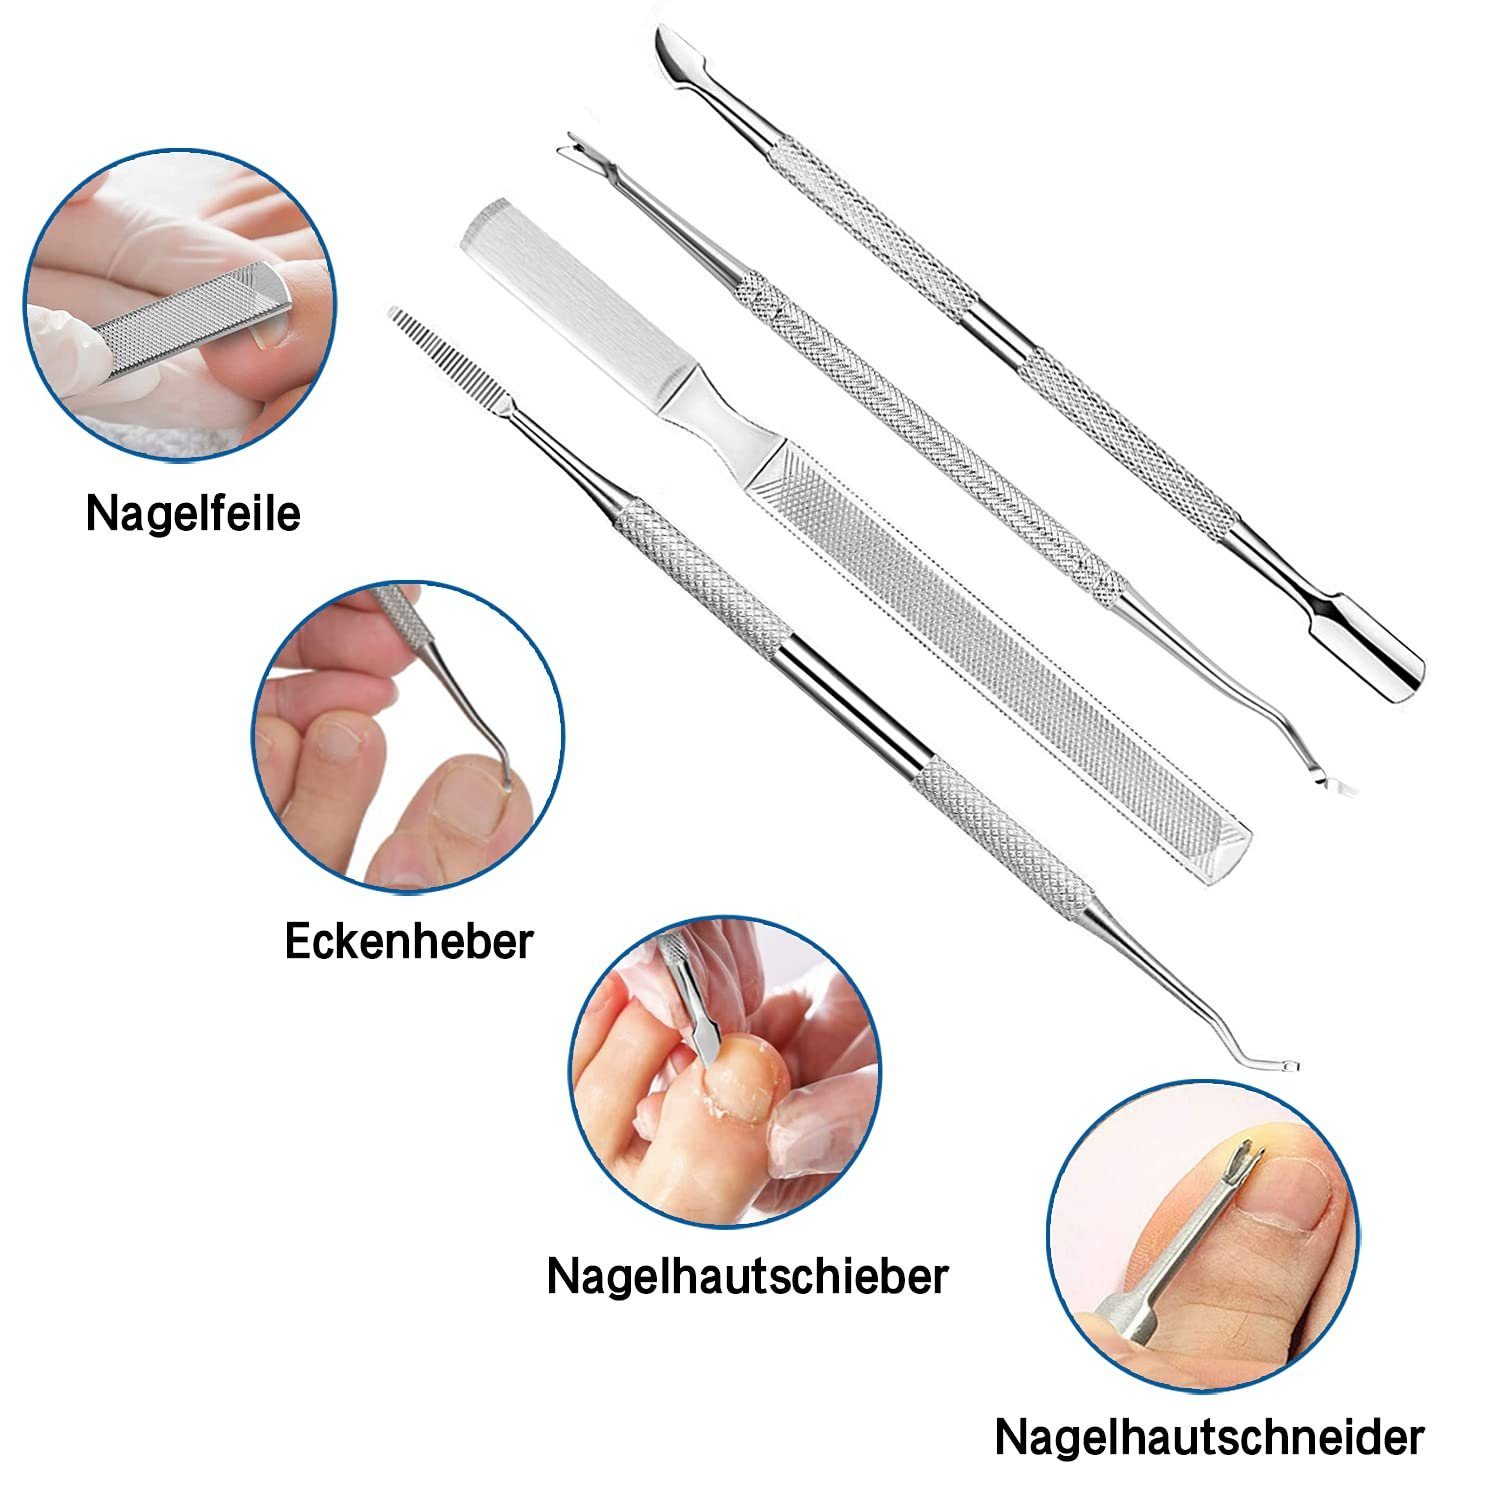 6-tlg., 6-tlg., Nagelknipser-Set, ® für Nagelprobleme COOL-i Tasche, Edelstahl, entwickelt